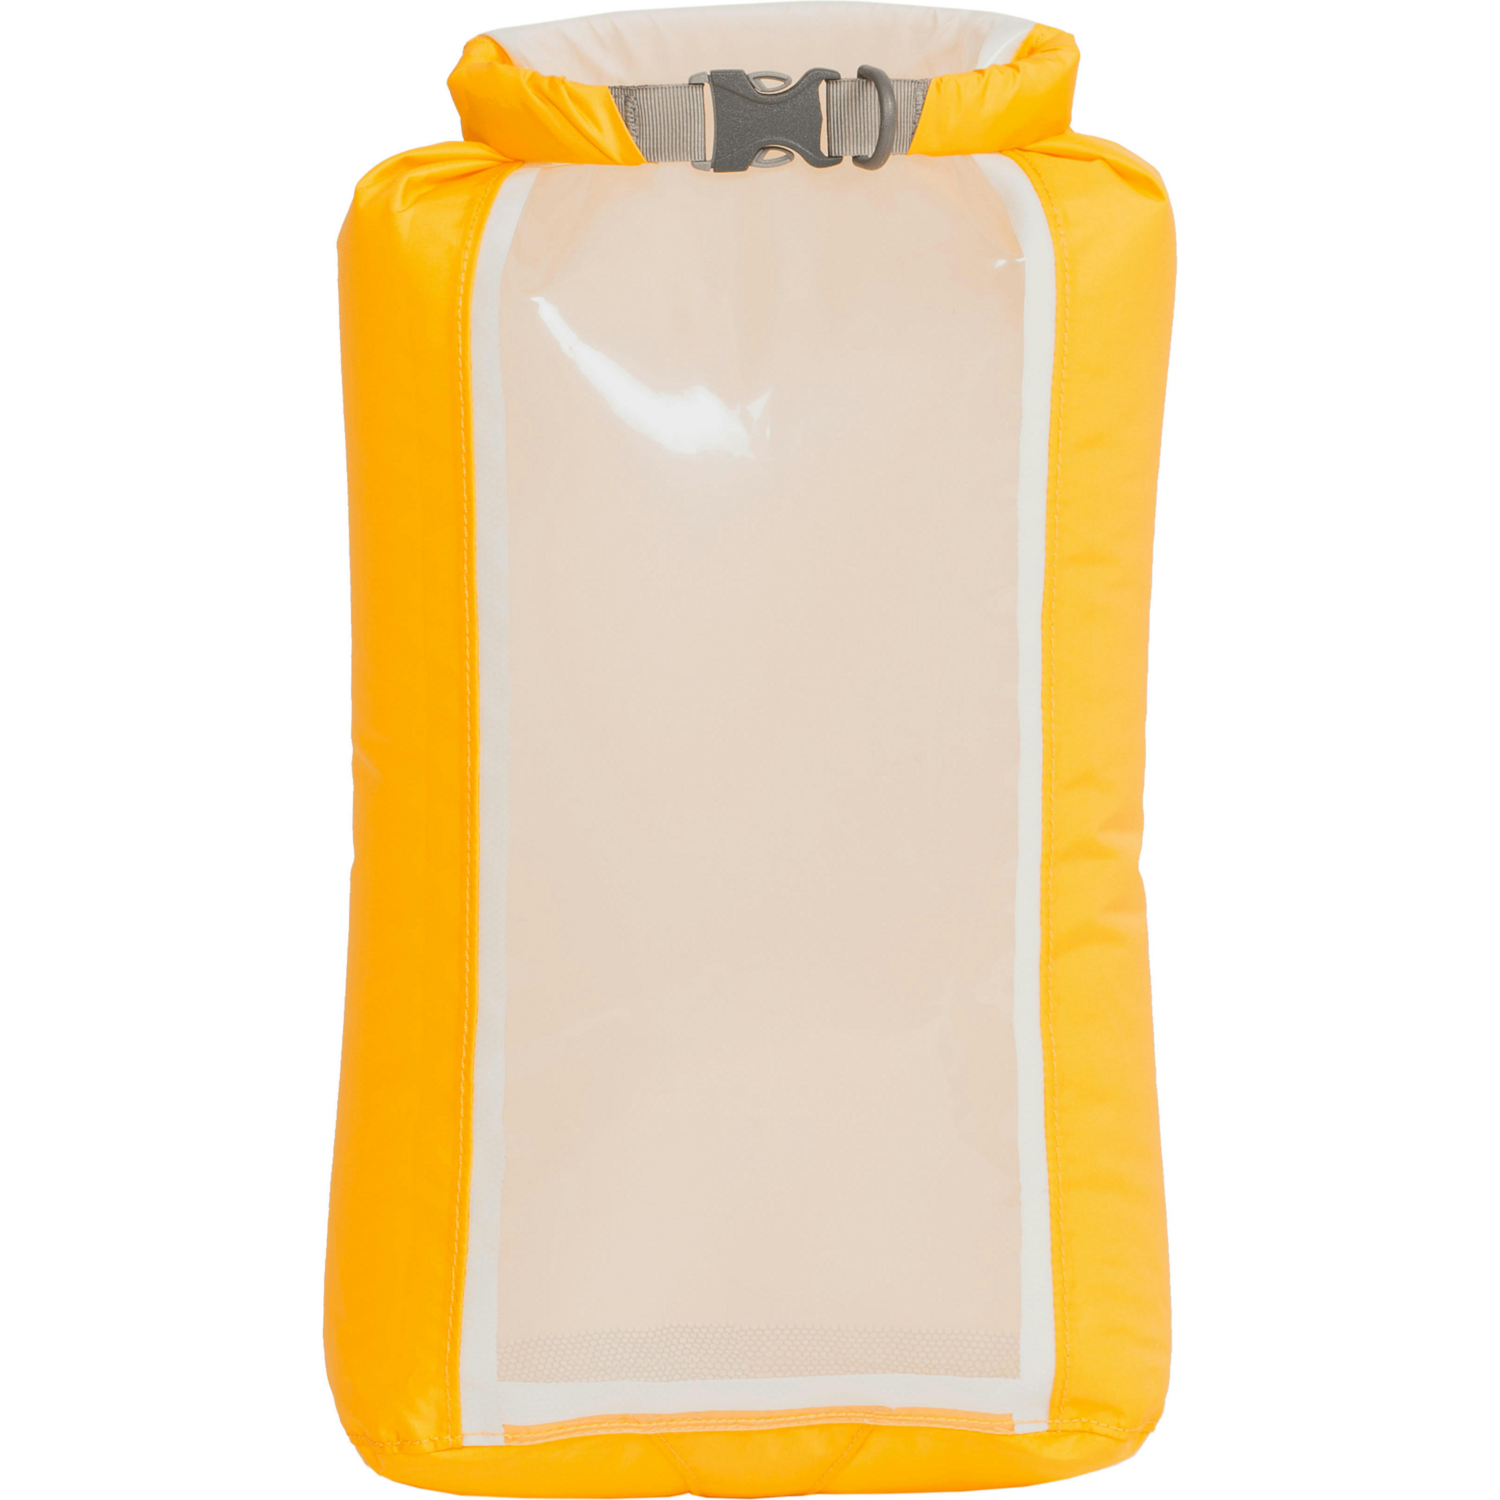 Гермомешок Exped Fold Drybag CS S yellow желтый фото 